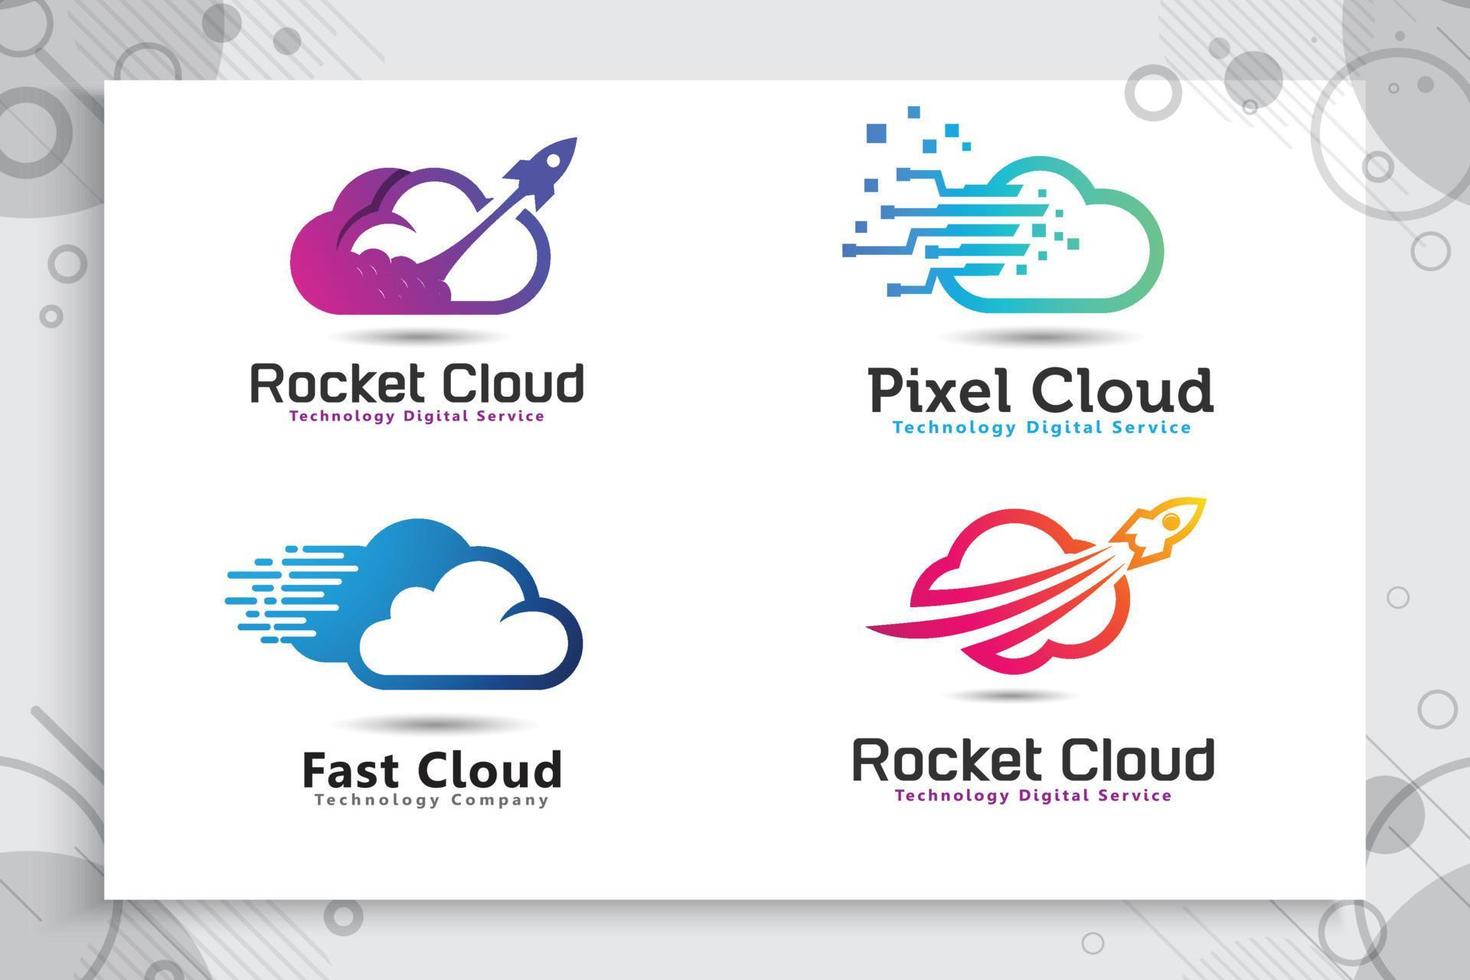 definir coleção de logotipo de vetor de nuvem de foguete com estilo colorido e simples, nuvem de ilustração e foguete como um ícone símbolo da empresa de tecnologia digital.